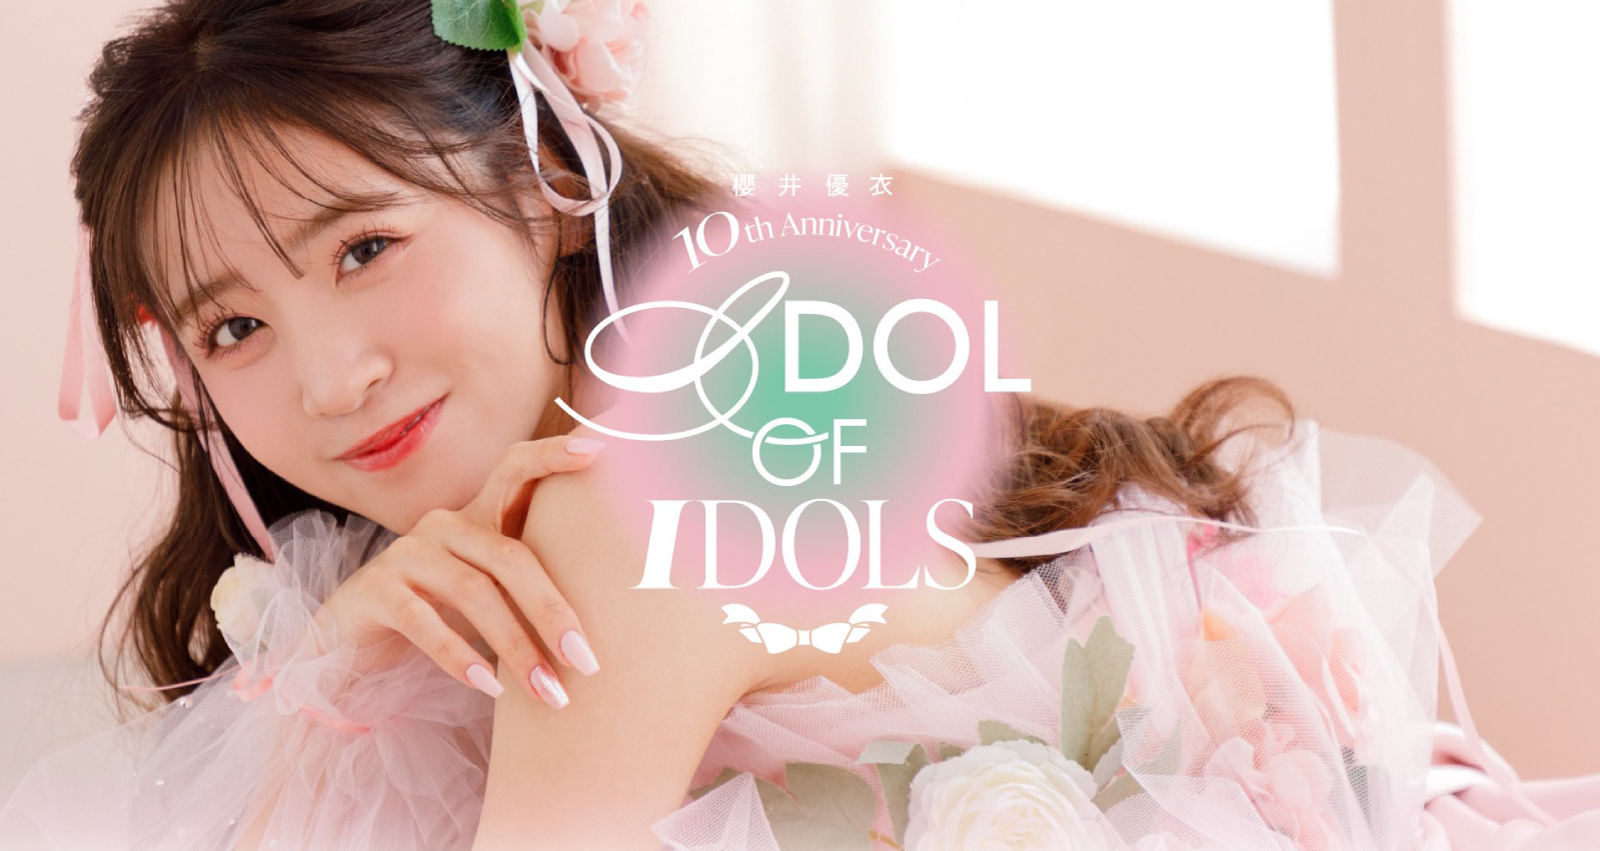 櫻井優衣 10th Anniversary -IDOL OF IDOLS- 記念イベント